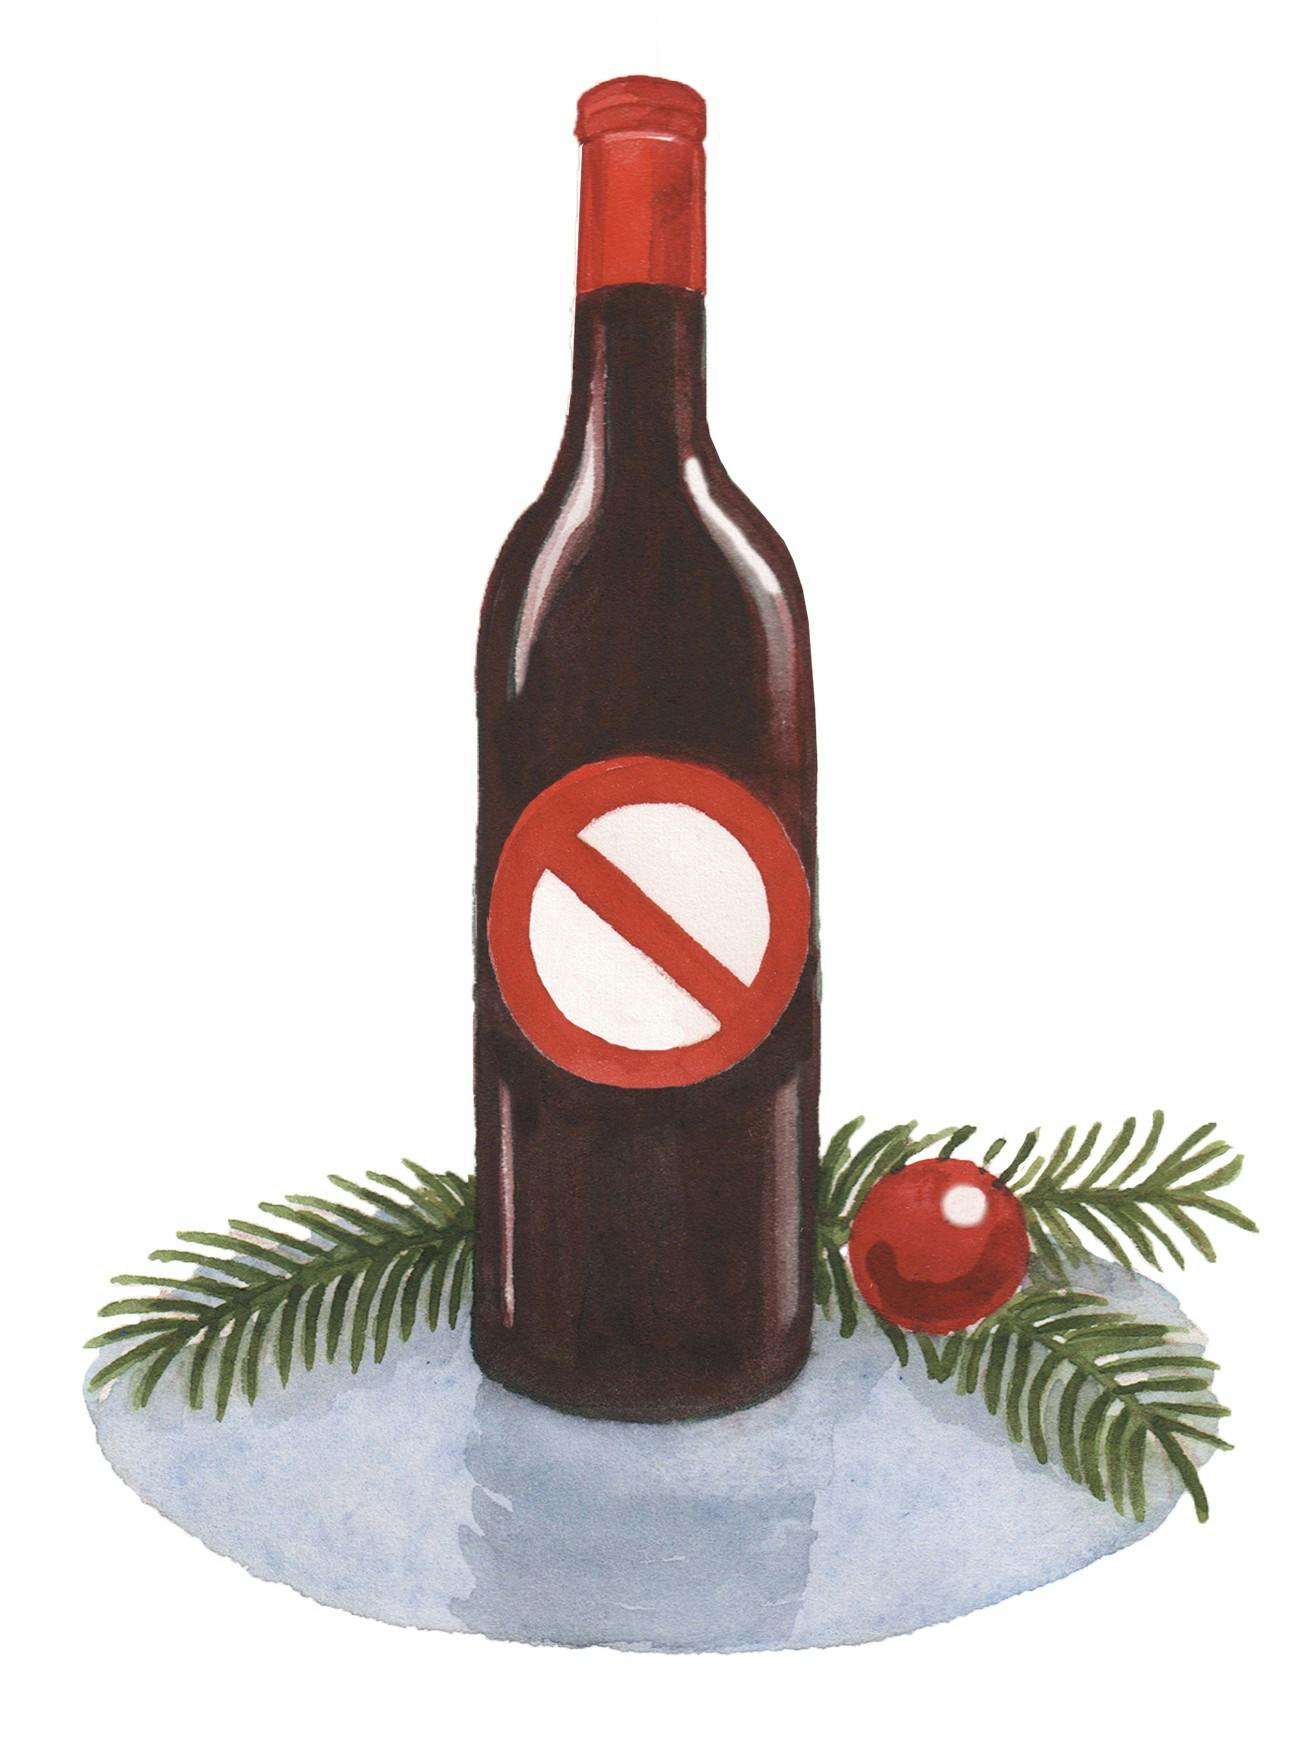 Puks brevkasse: Ingen vin på bordet juleaften?